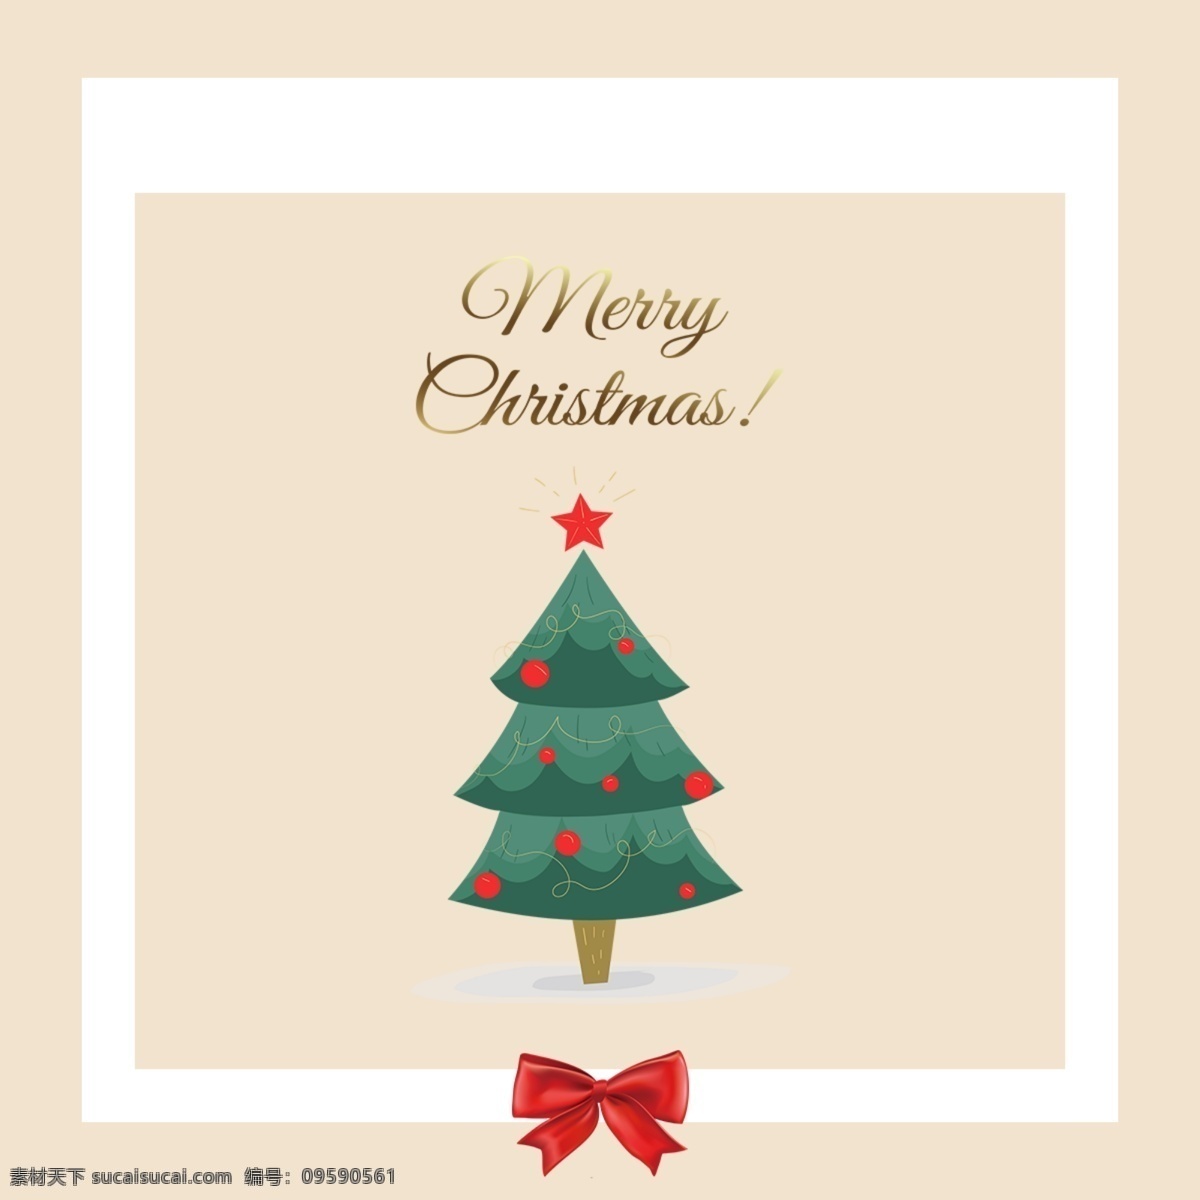 一个 可爱 圣诞贺卡 背景 亮 银色 领结 简单 阳光 明媚 祝 圣诞快乐 光 银卡 空空